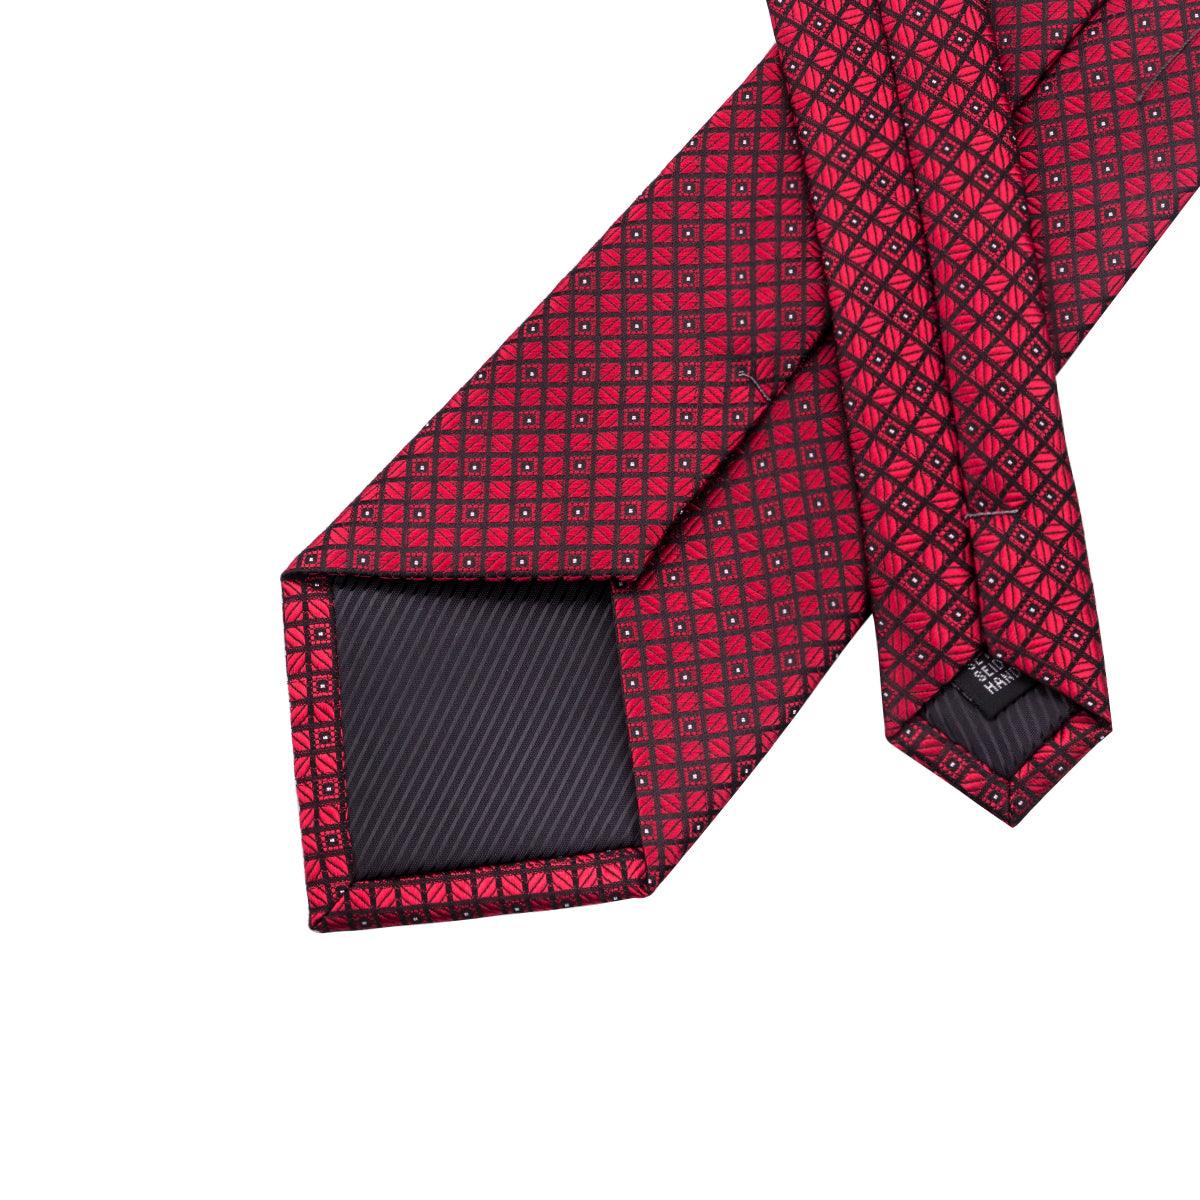 Red Burgundy Plaid Silk Tie Pocket Square Cufflink Set - STYLETIE